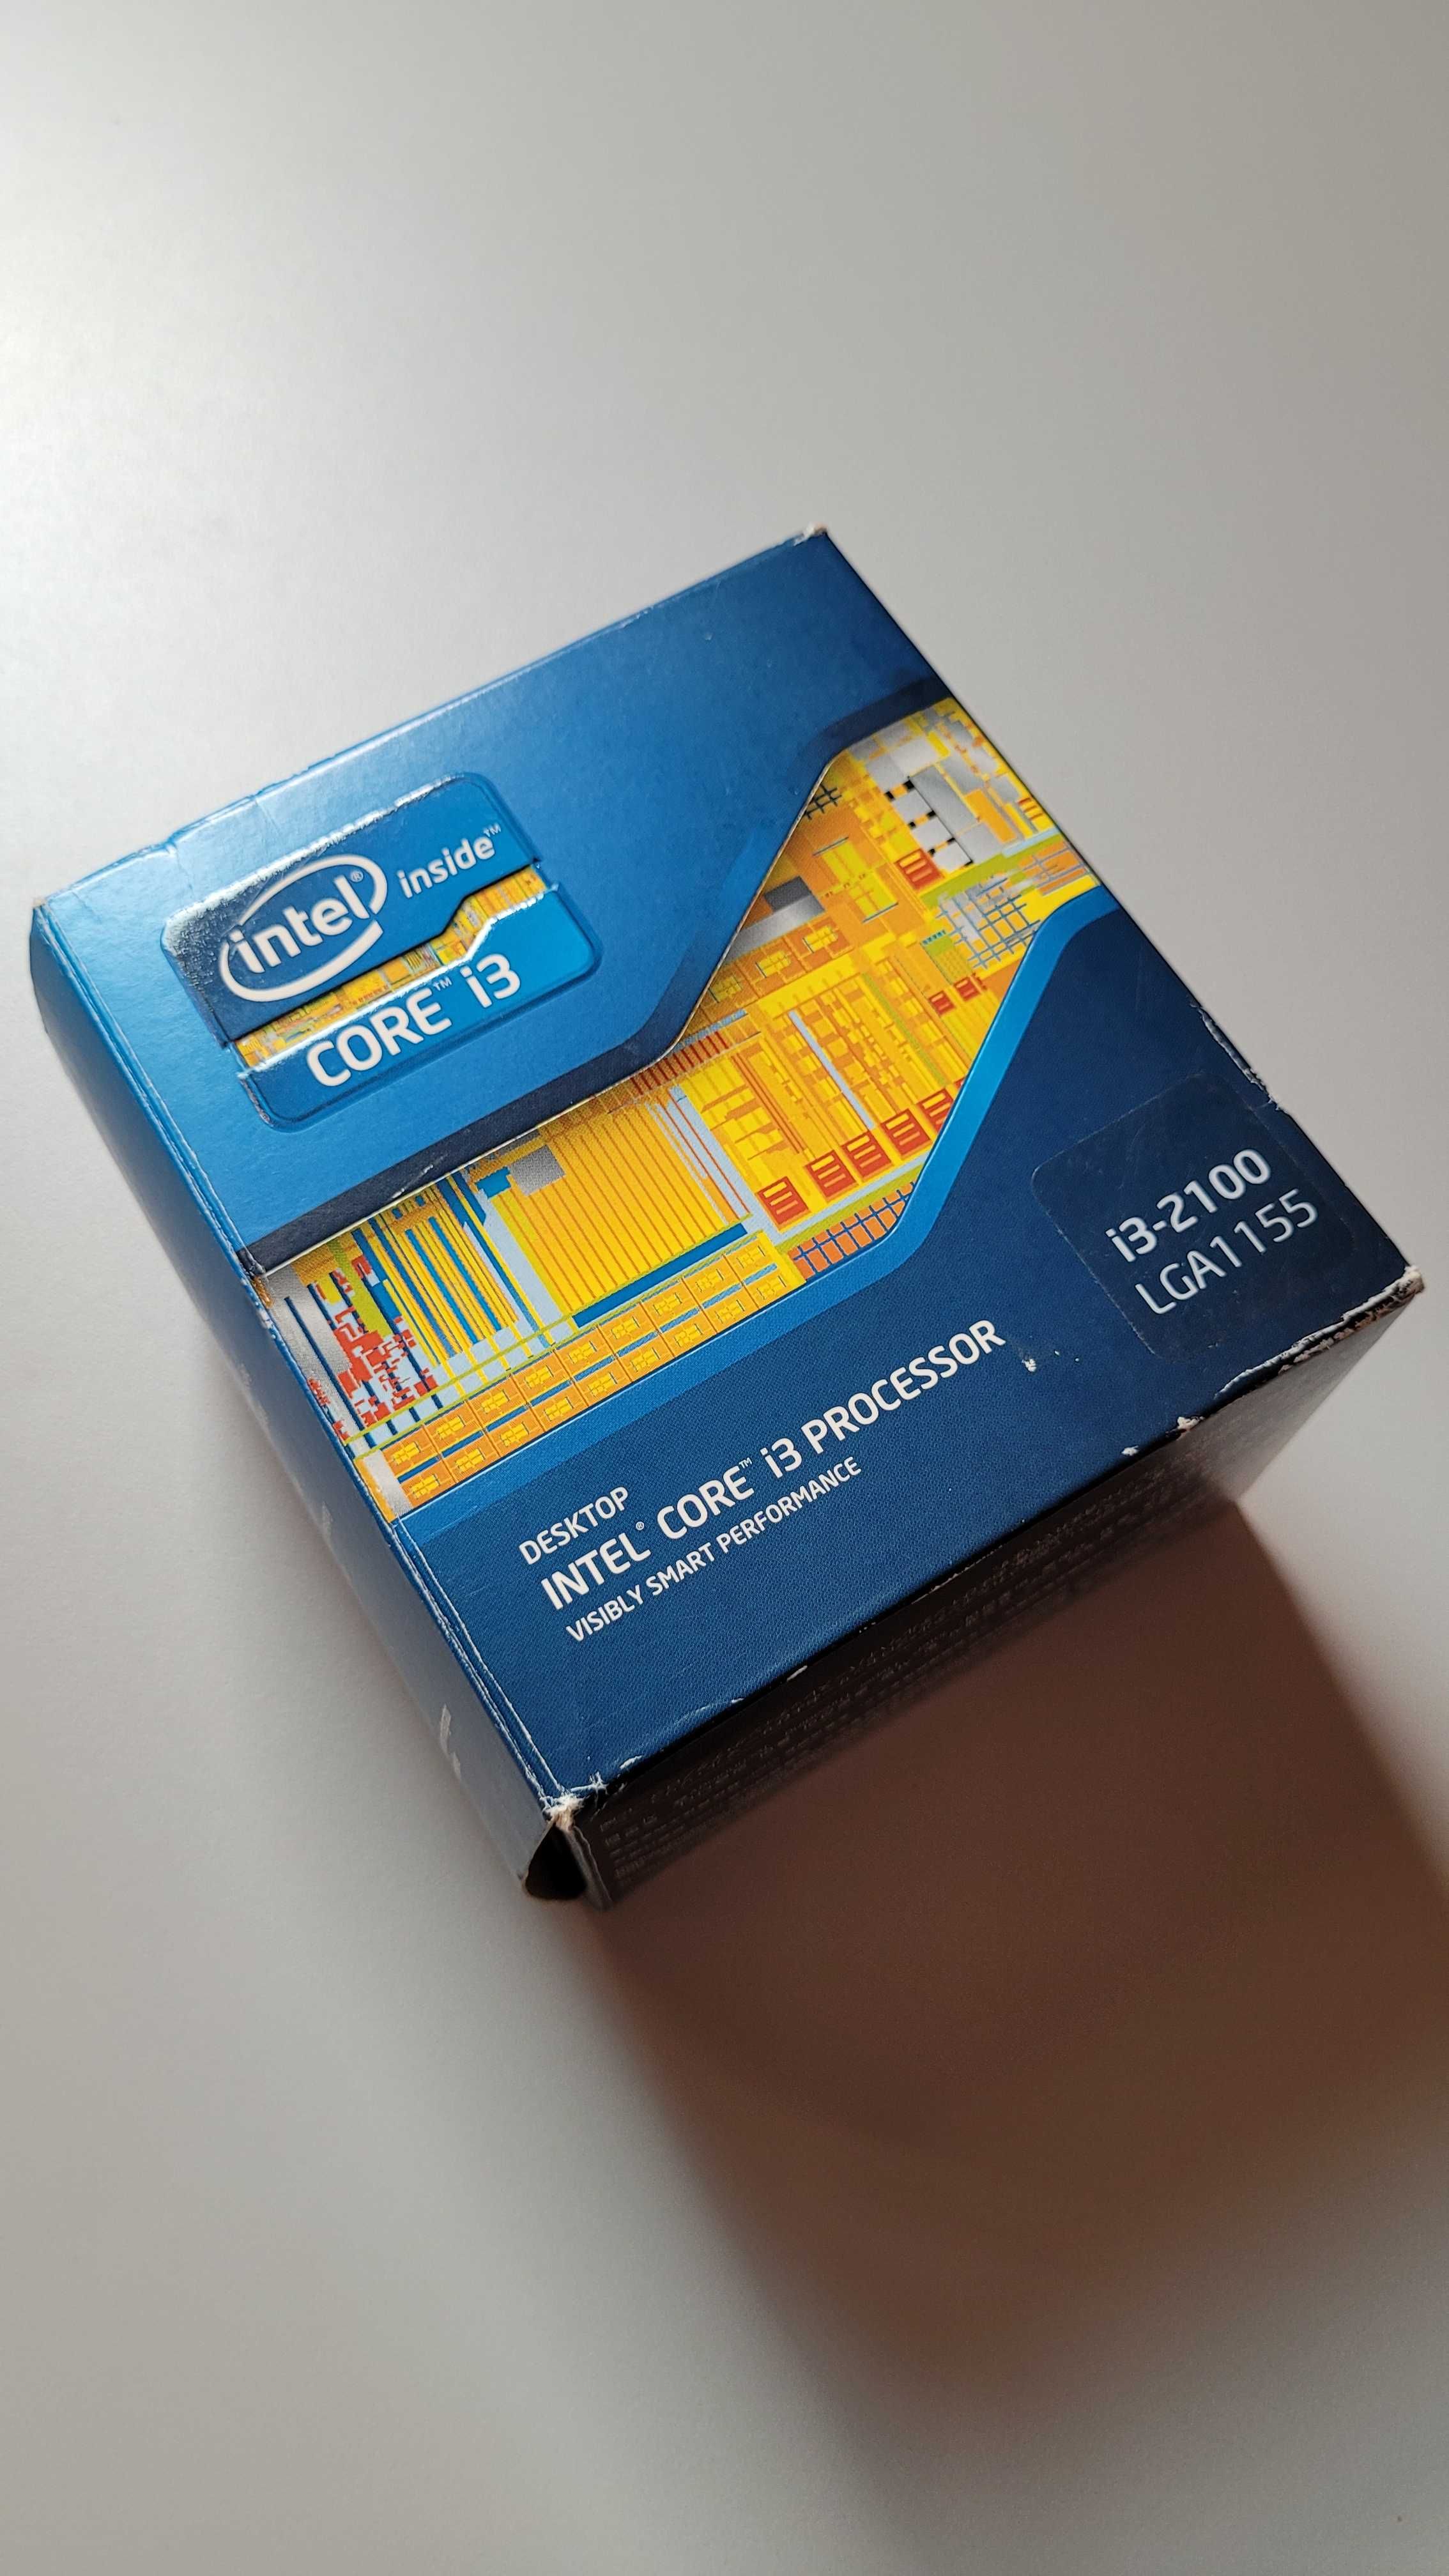 Processador Intel Core i3-2100 3.10 GHz